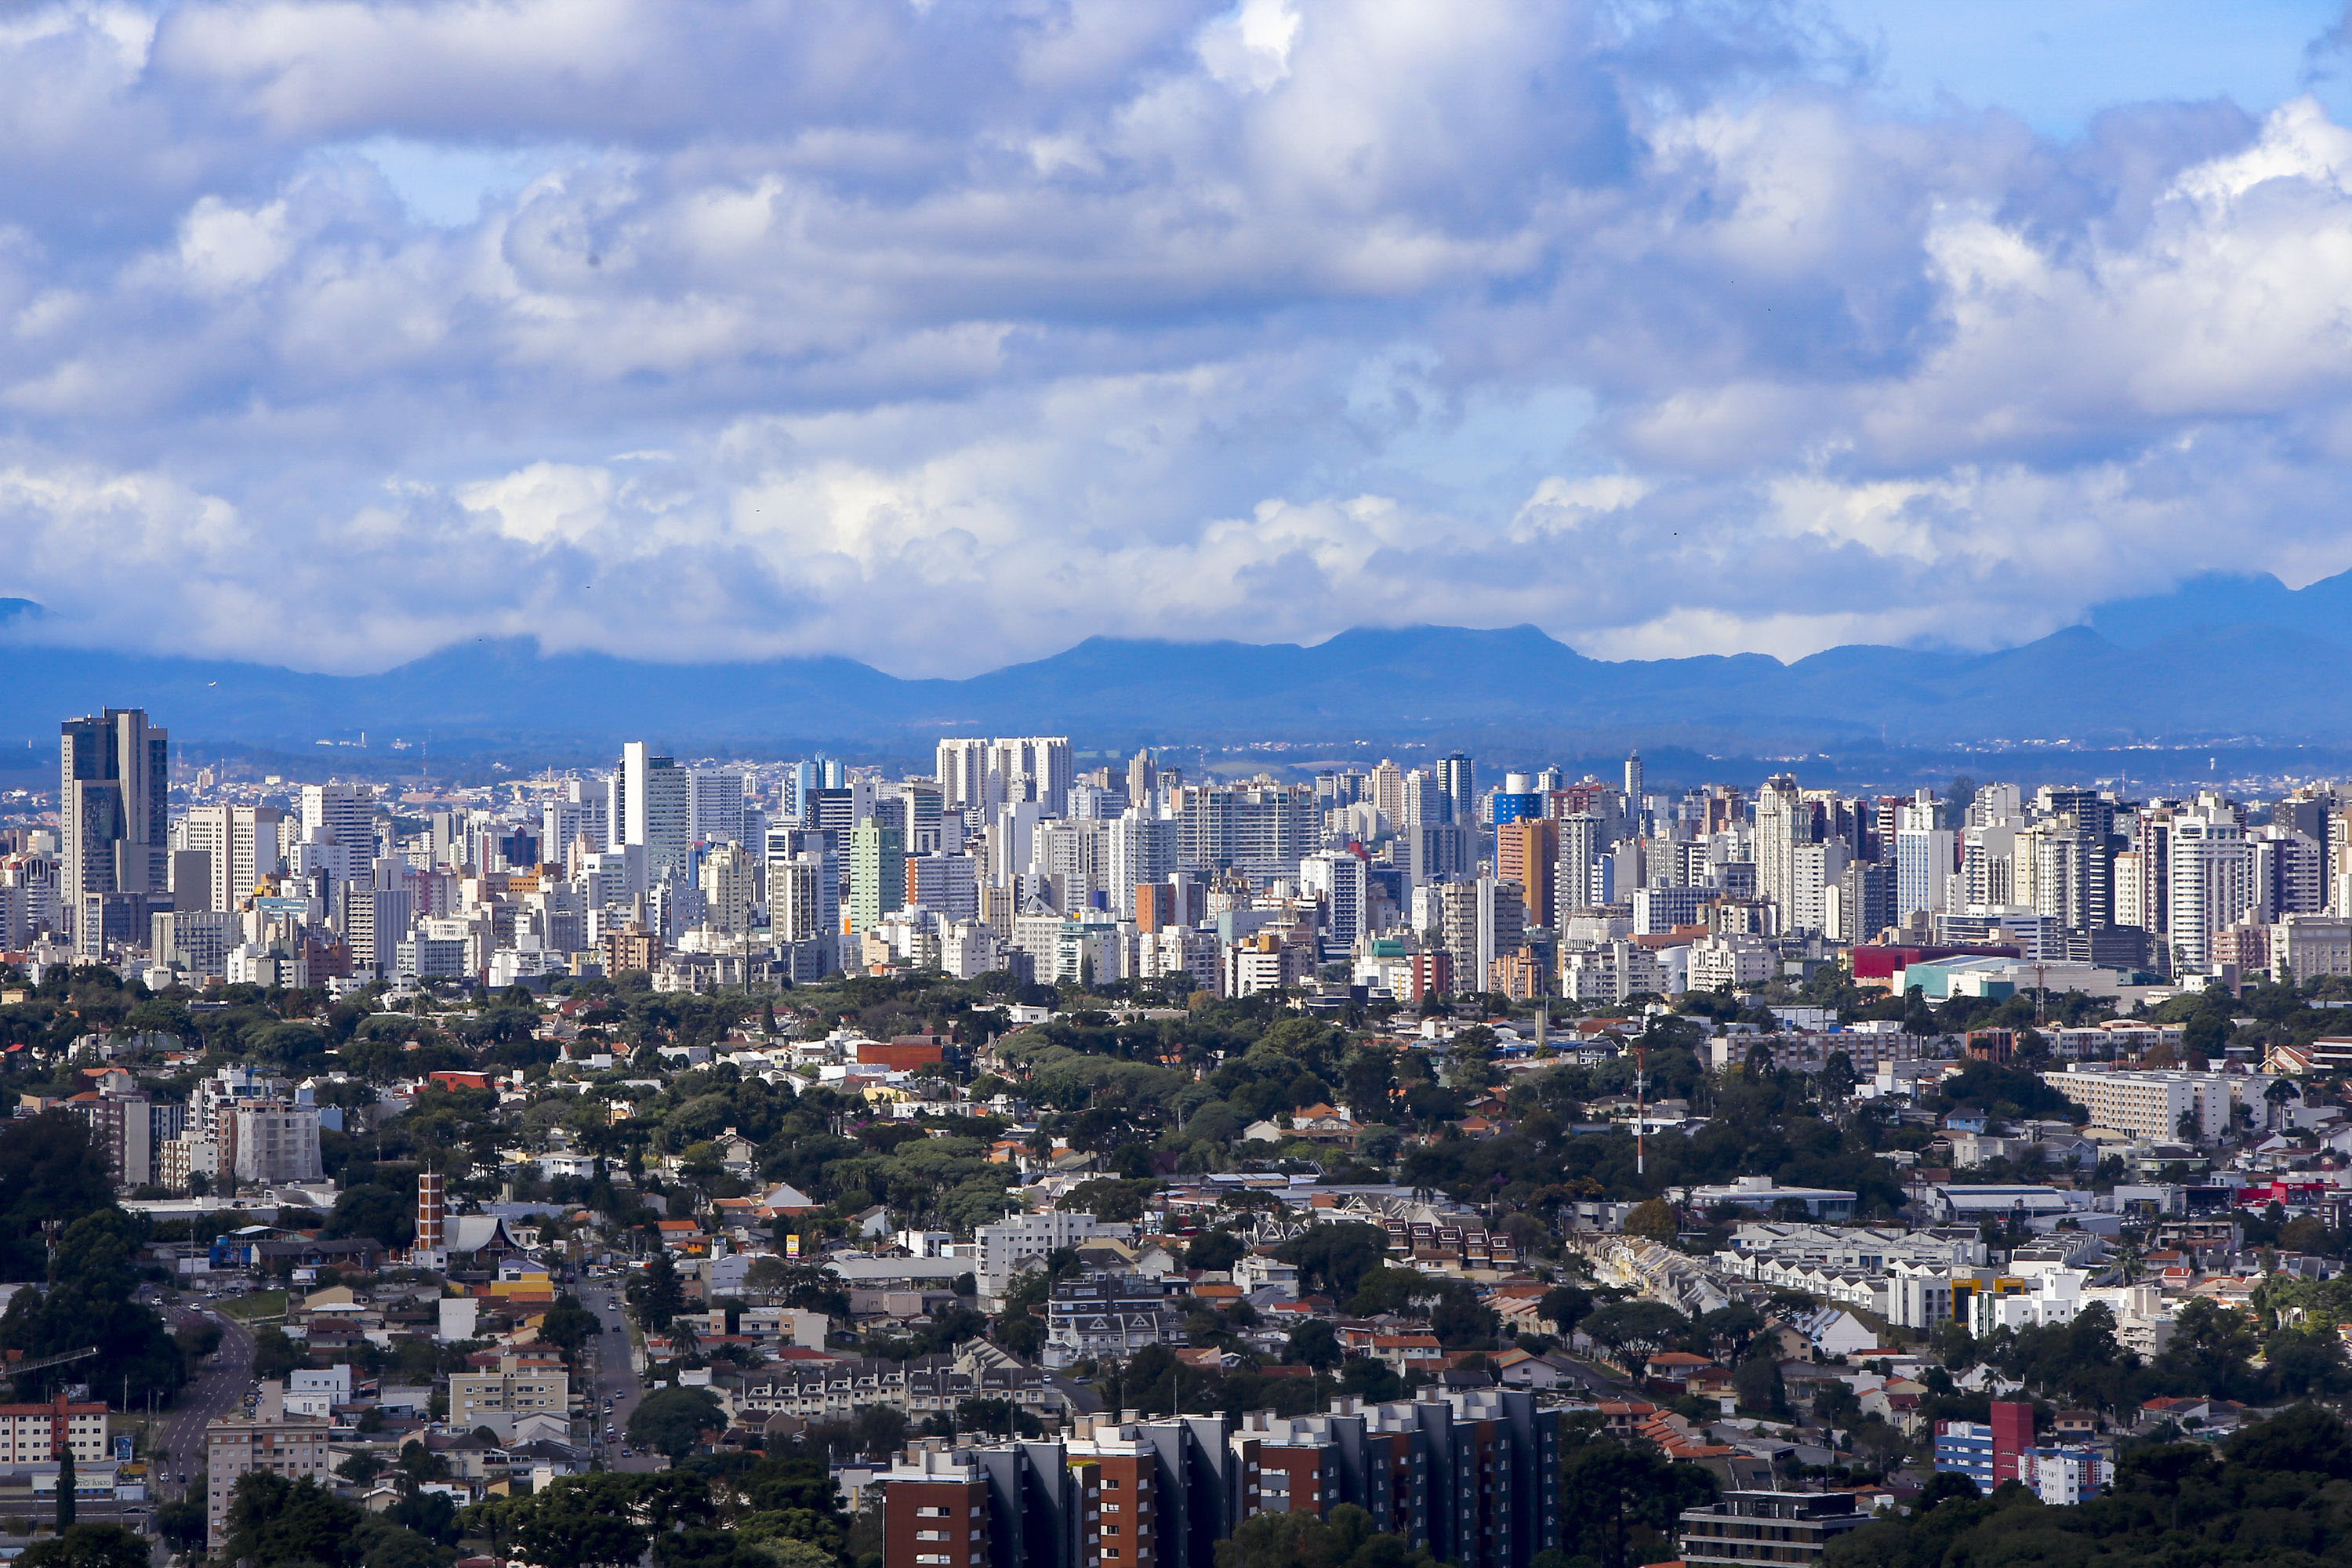 Três cidades paranaenses se destacam em ranking mundial de startups